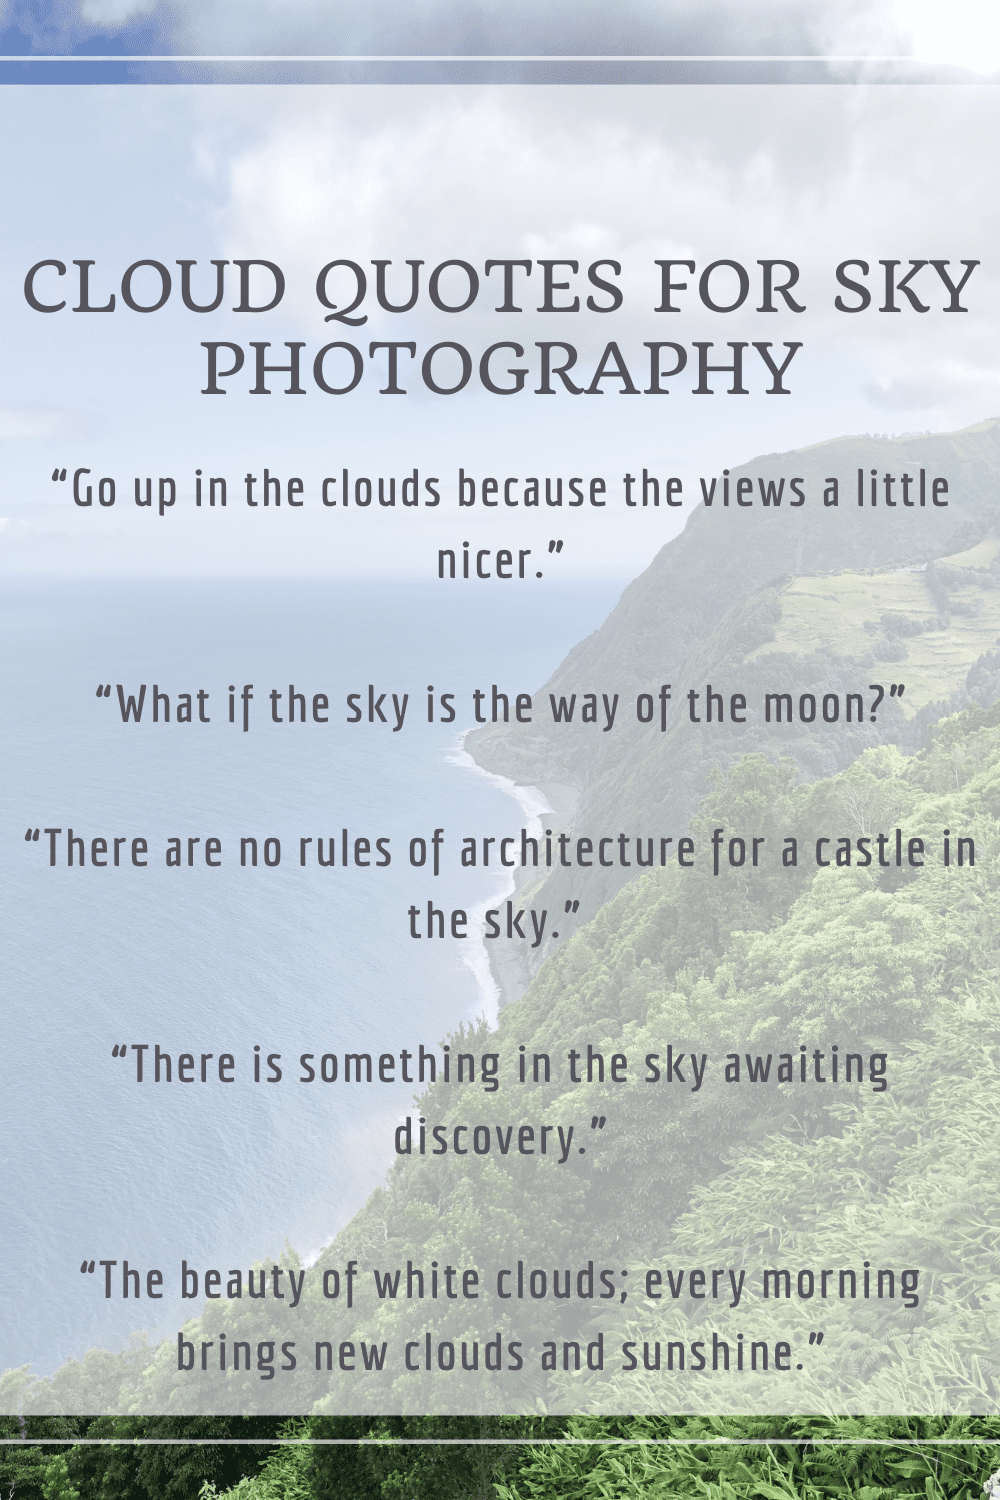 75+ Cloud Quotes & Captions (for Instagram & More!) | TripTins